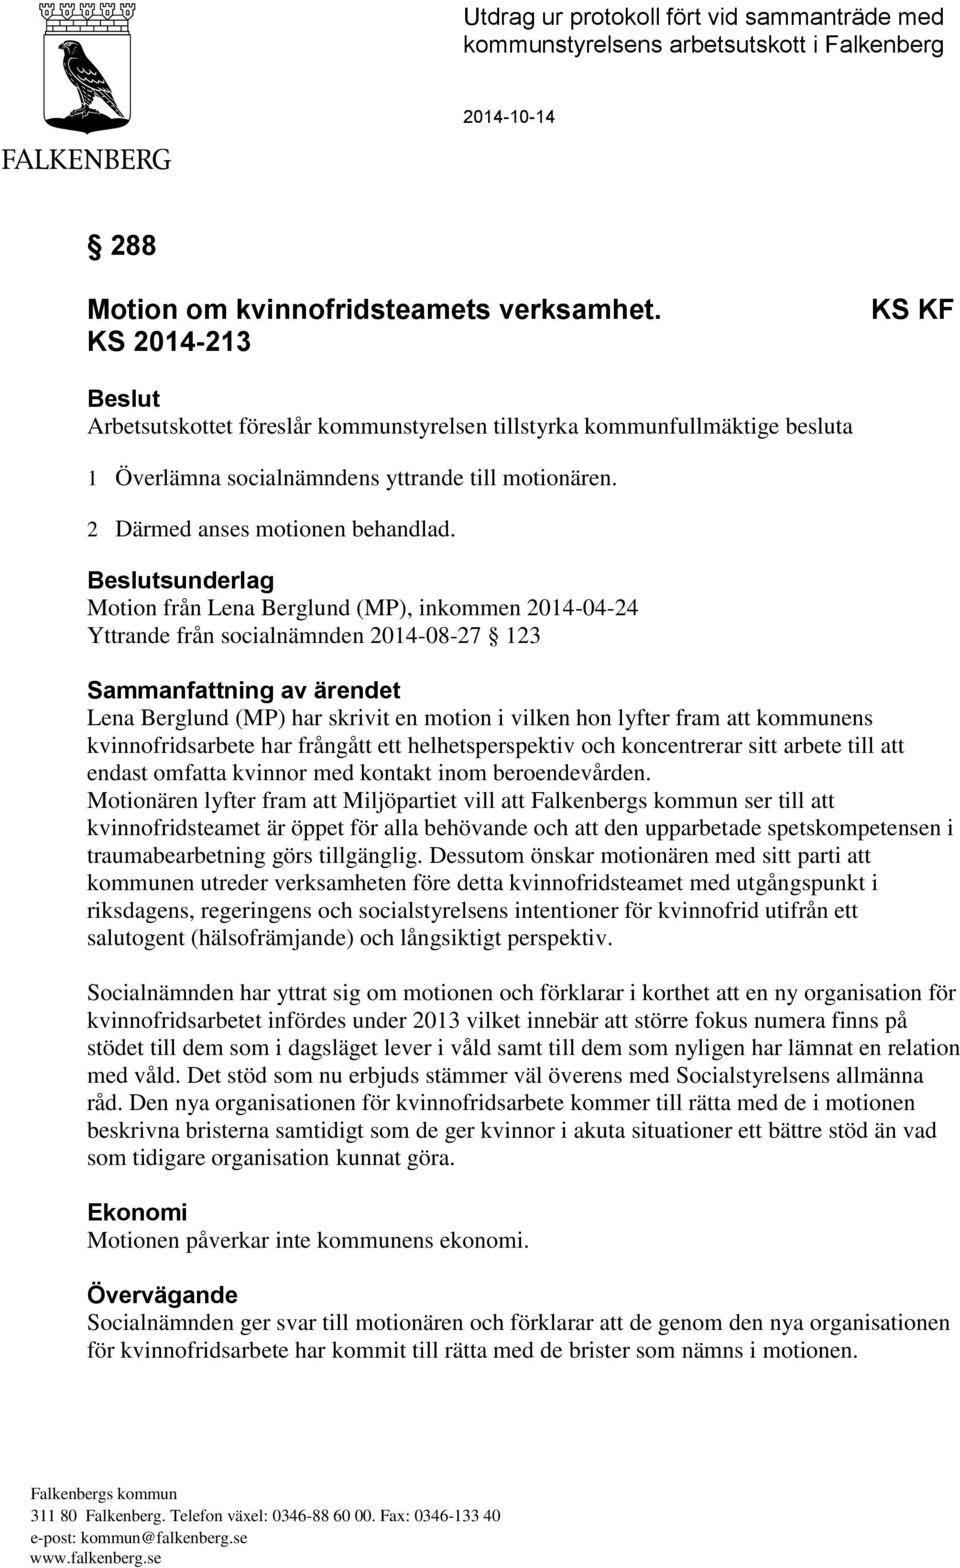 Beslutsunderlag Motion från Lena Berglund (MP), inkommen 2014-04-24 Yttrande från socialnämnden 2014-08-27 123 Sammanfattning av ärendet Lena Berglund (MP) har skrivit en motion i vilken hon lyfter